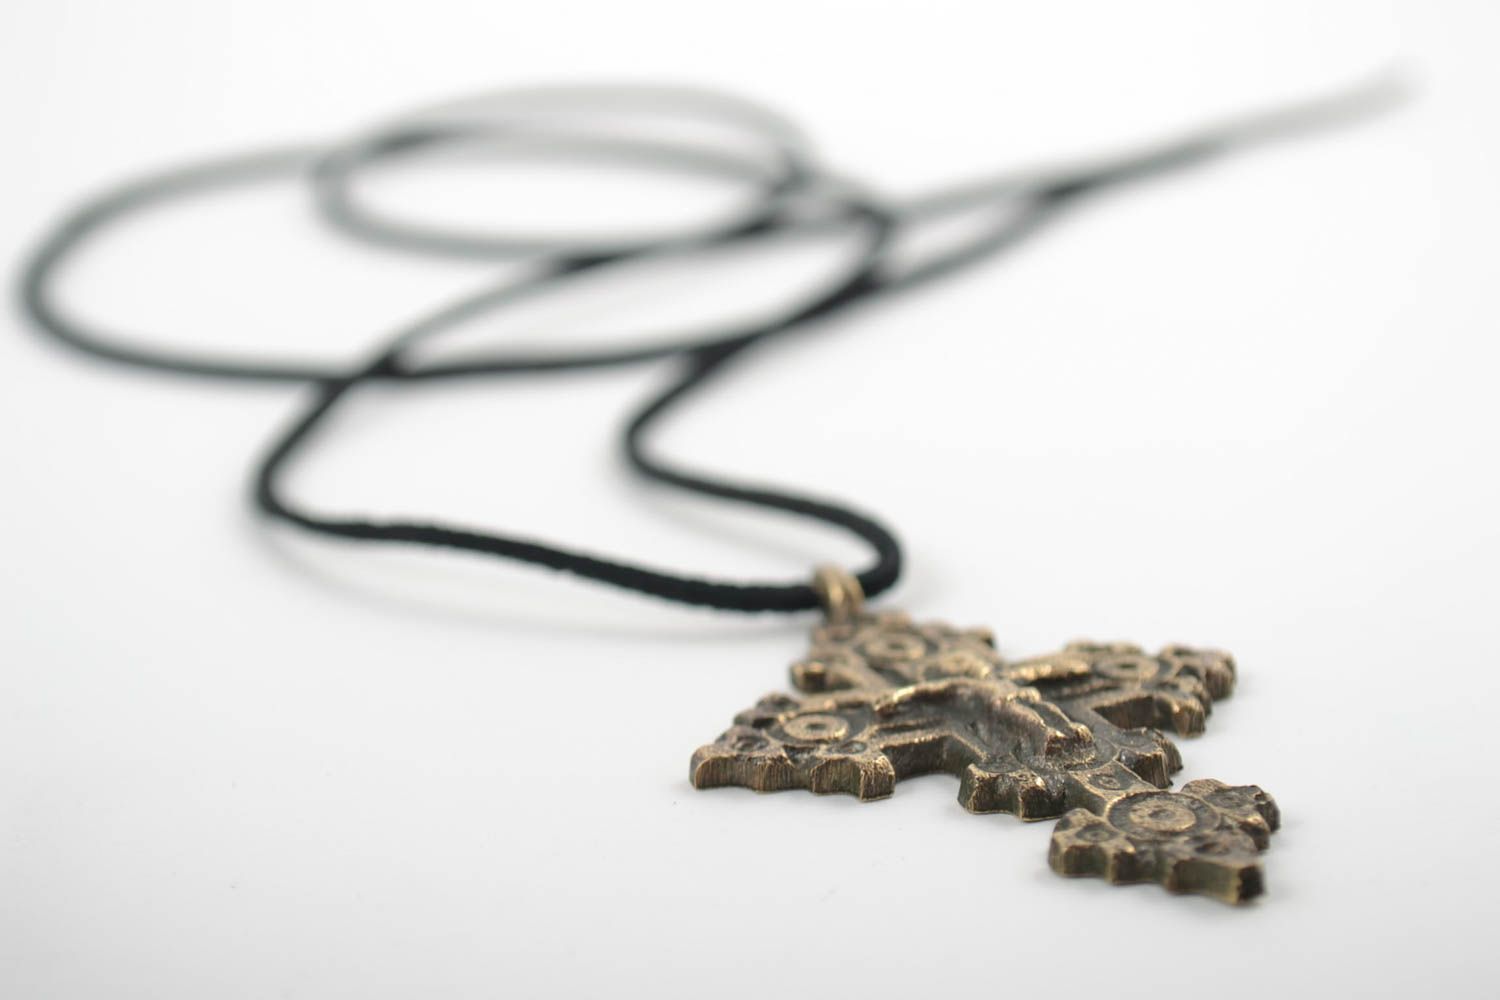 Нательный крест с распятием бронзовый на длинном шнурке защитный ручная работа фото 5